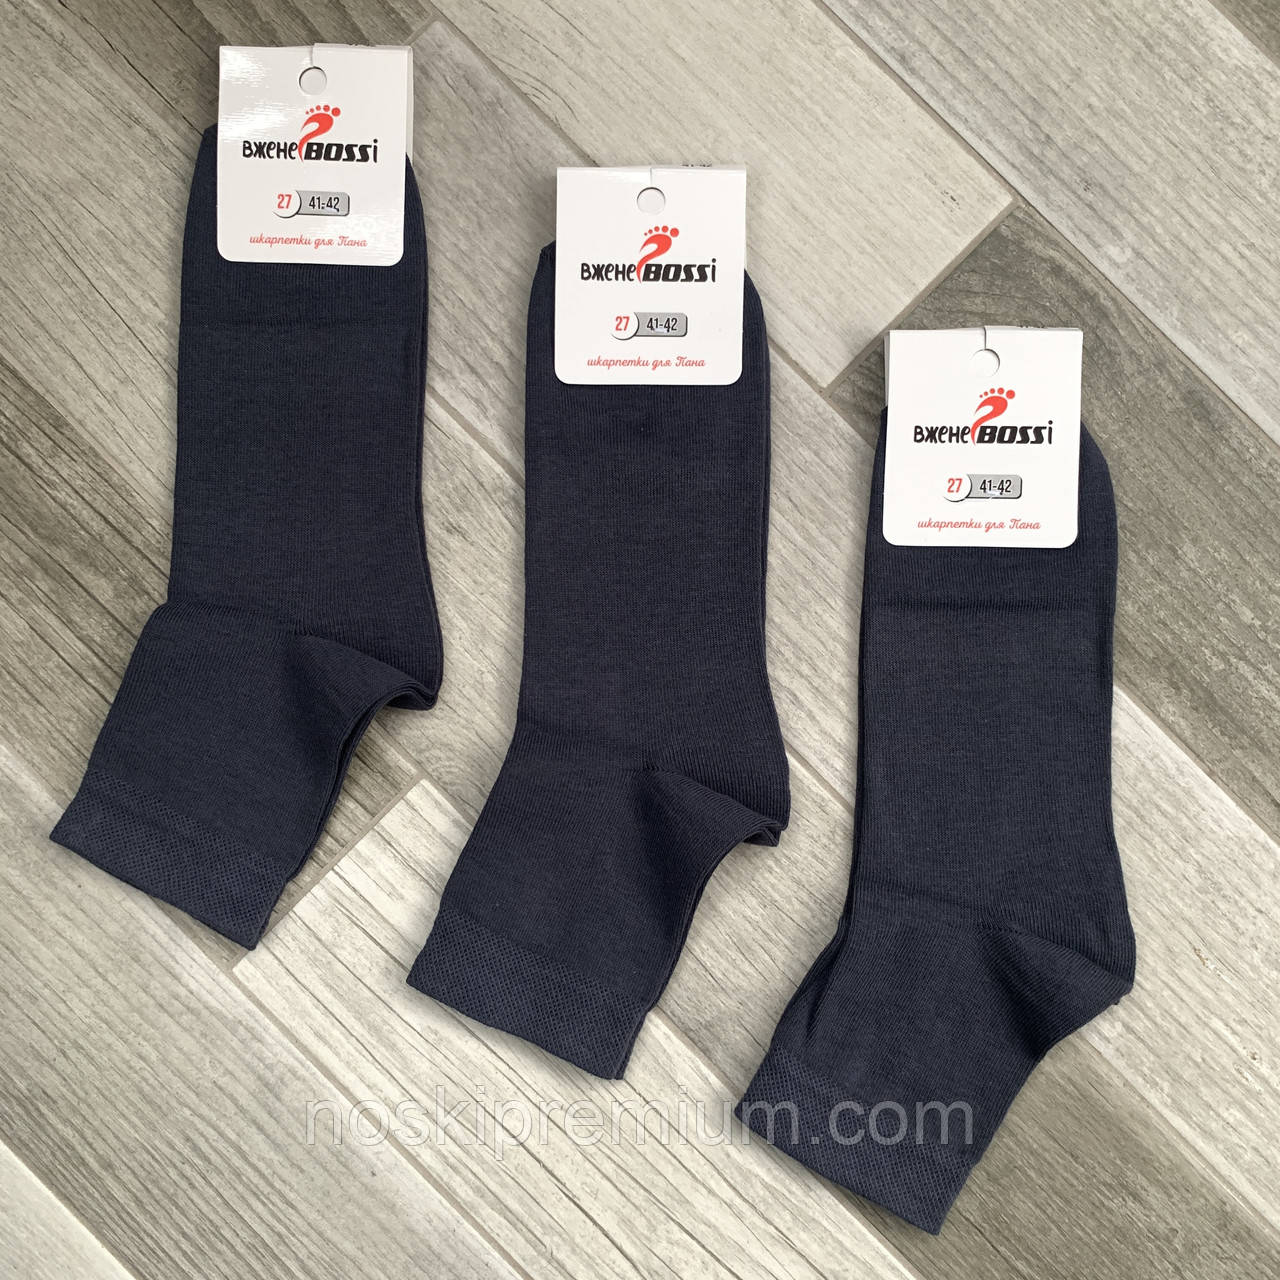 Шкарпетки чоловічі демісезонні бавовна середні ВженеBOSSі, розмір 27 (41-42), темно-сірі, 11046